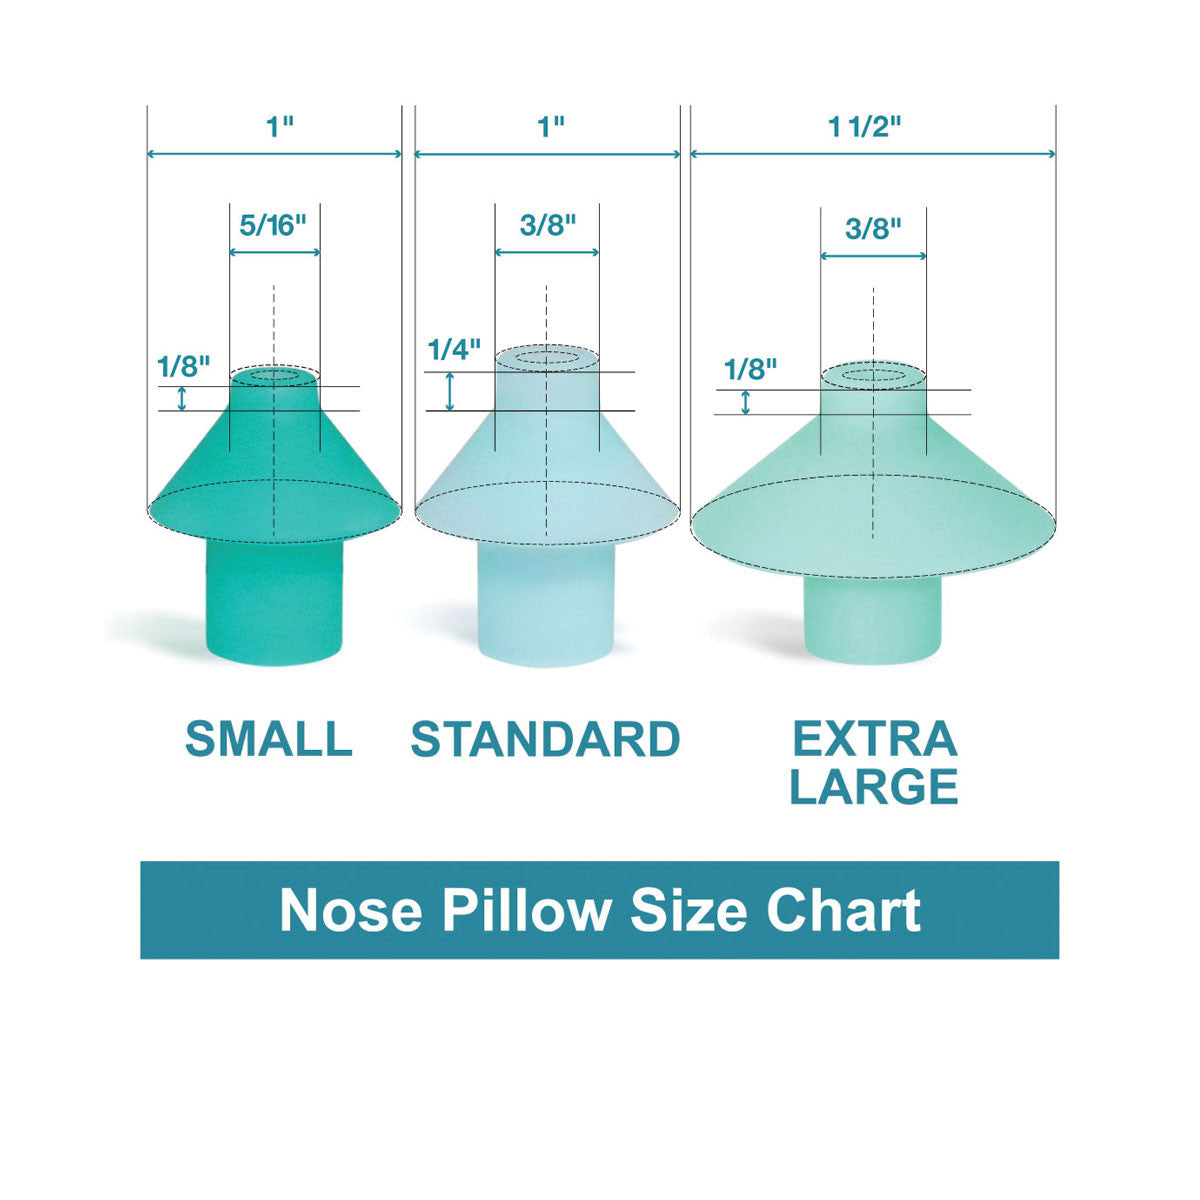 Nose Pillow-Nasal Dock Combos